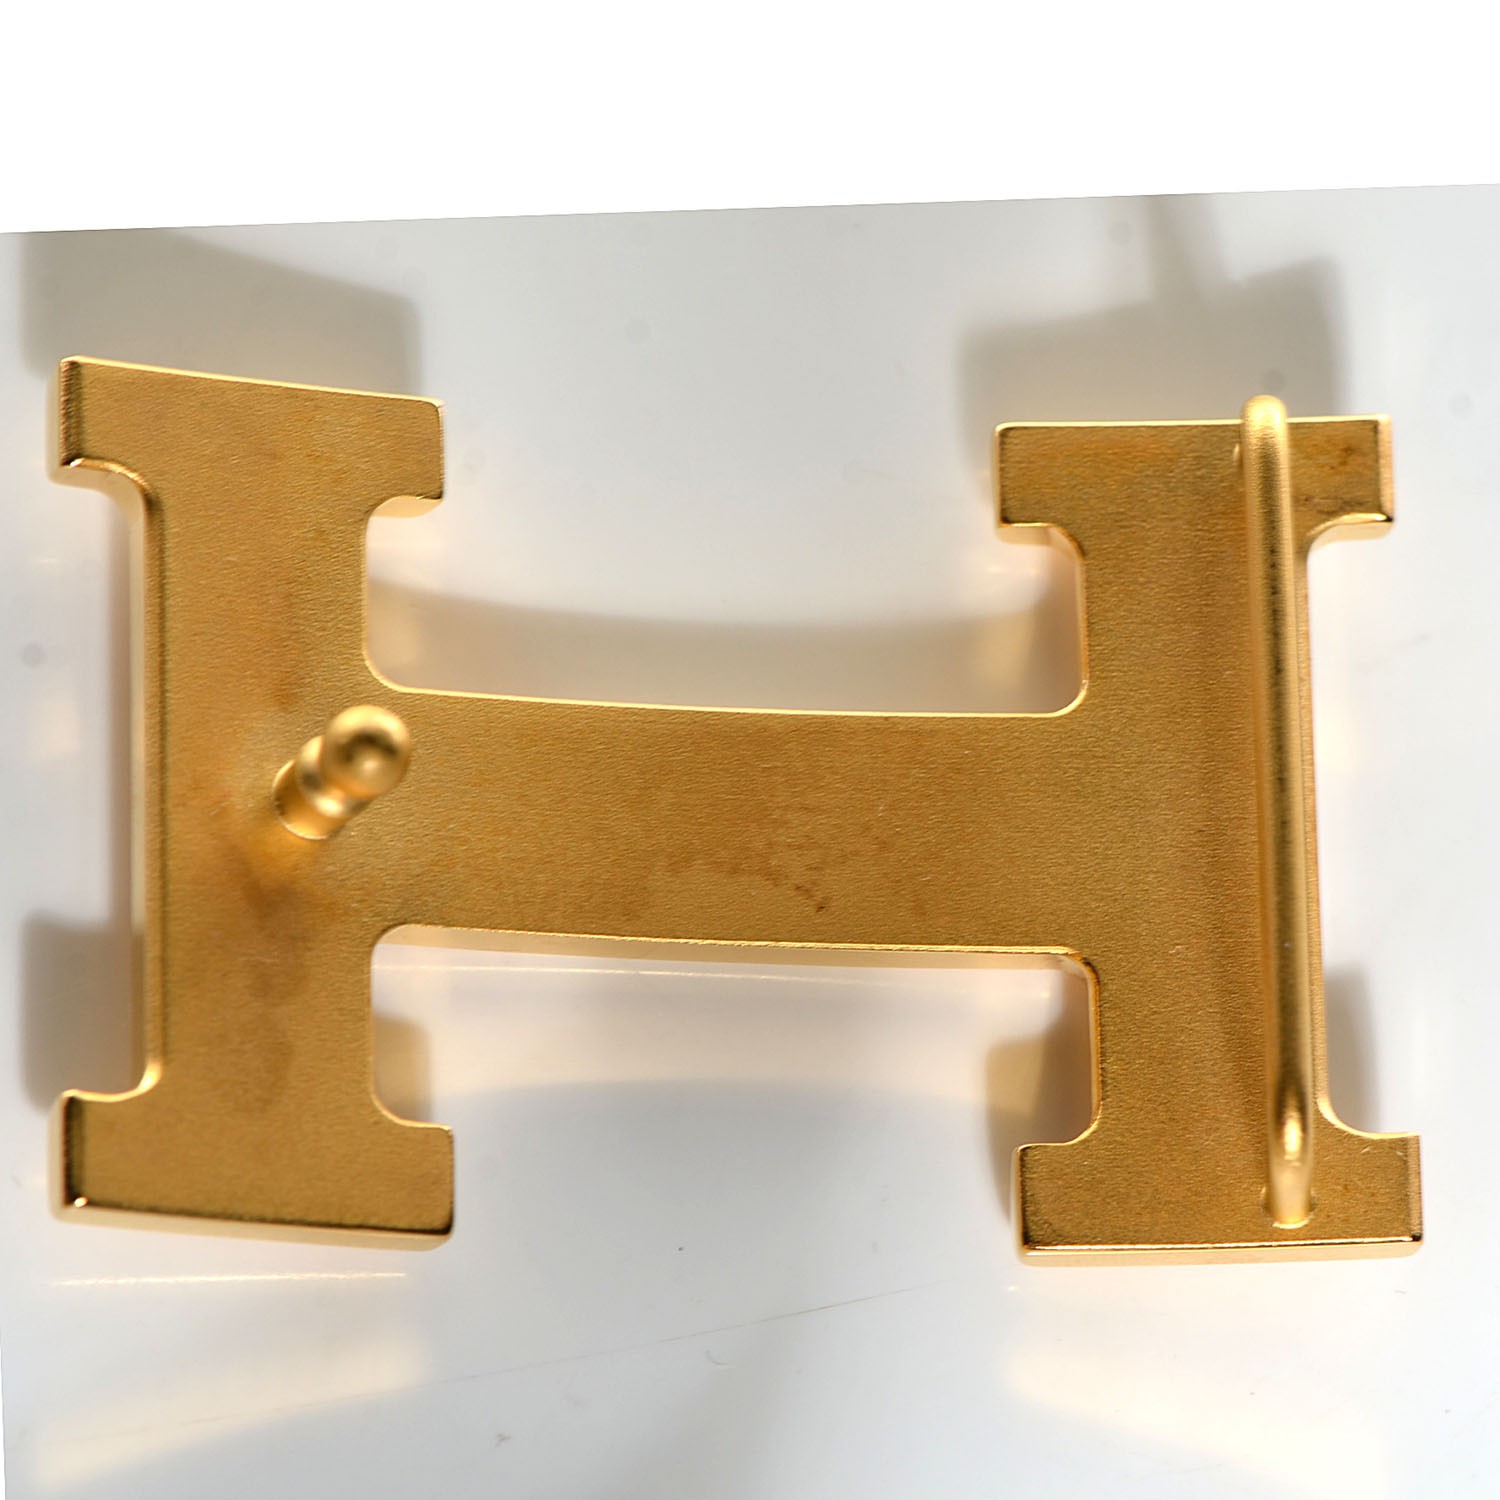 HERMES Brushed 32mm H Belt Buckle Gold Plated 103417